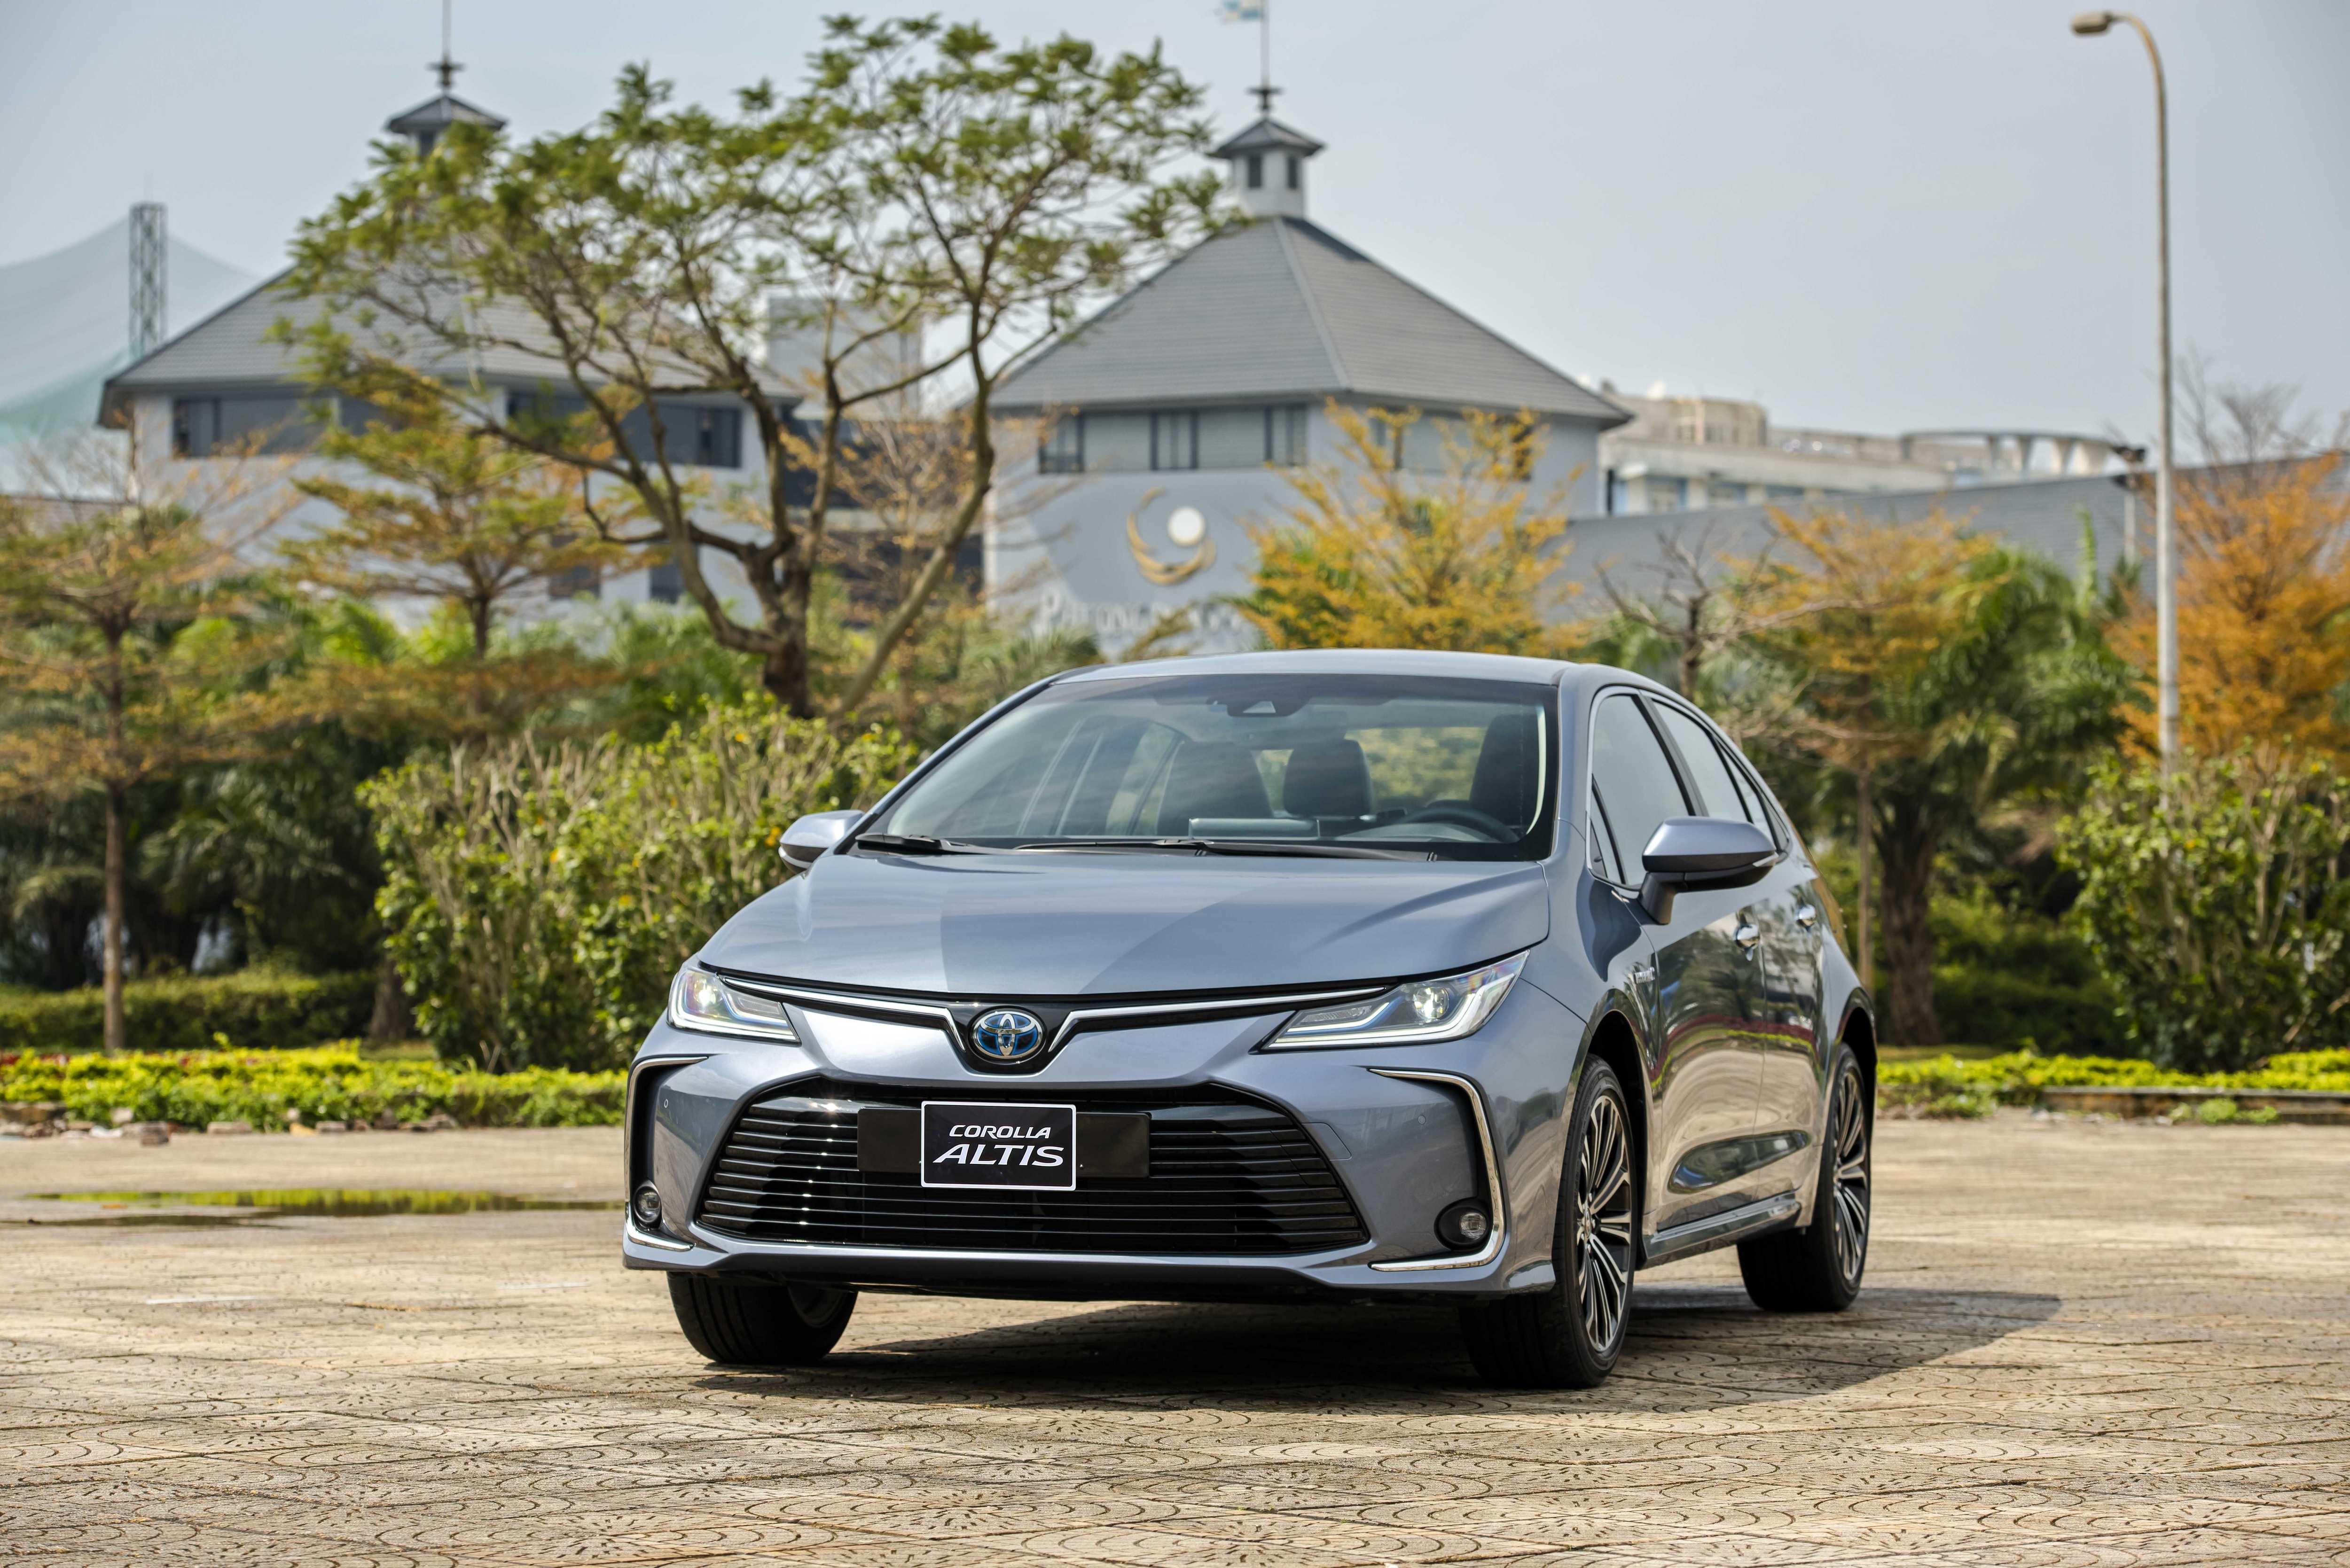 Toyota Corolla Altis được giảm giá gần 100 triệu đồng tại đại lý - 1 - cscplus.work